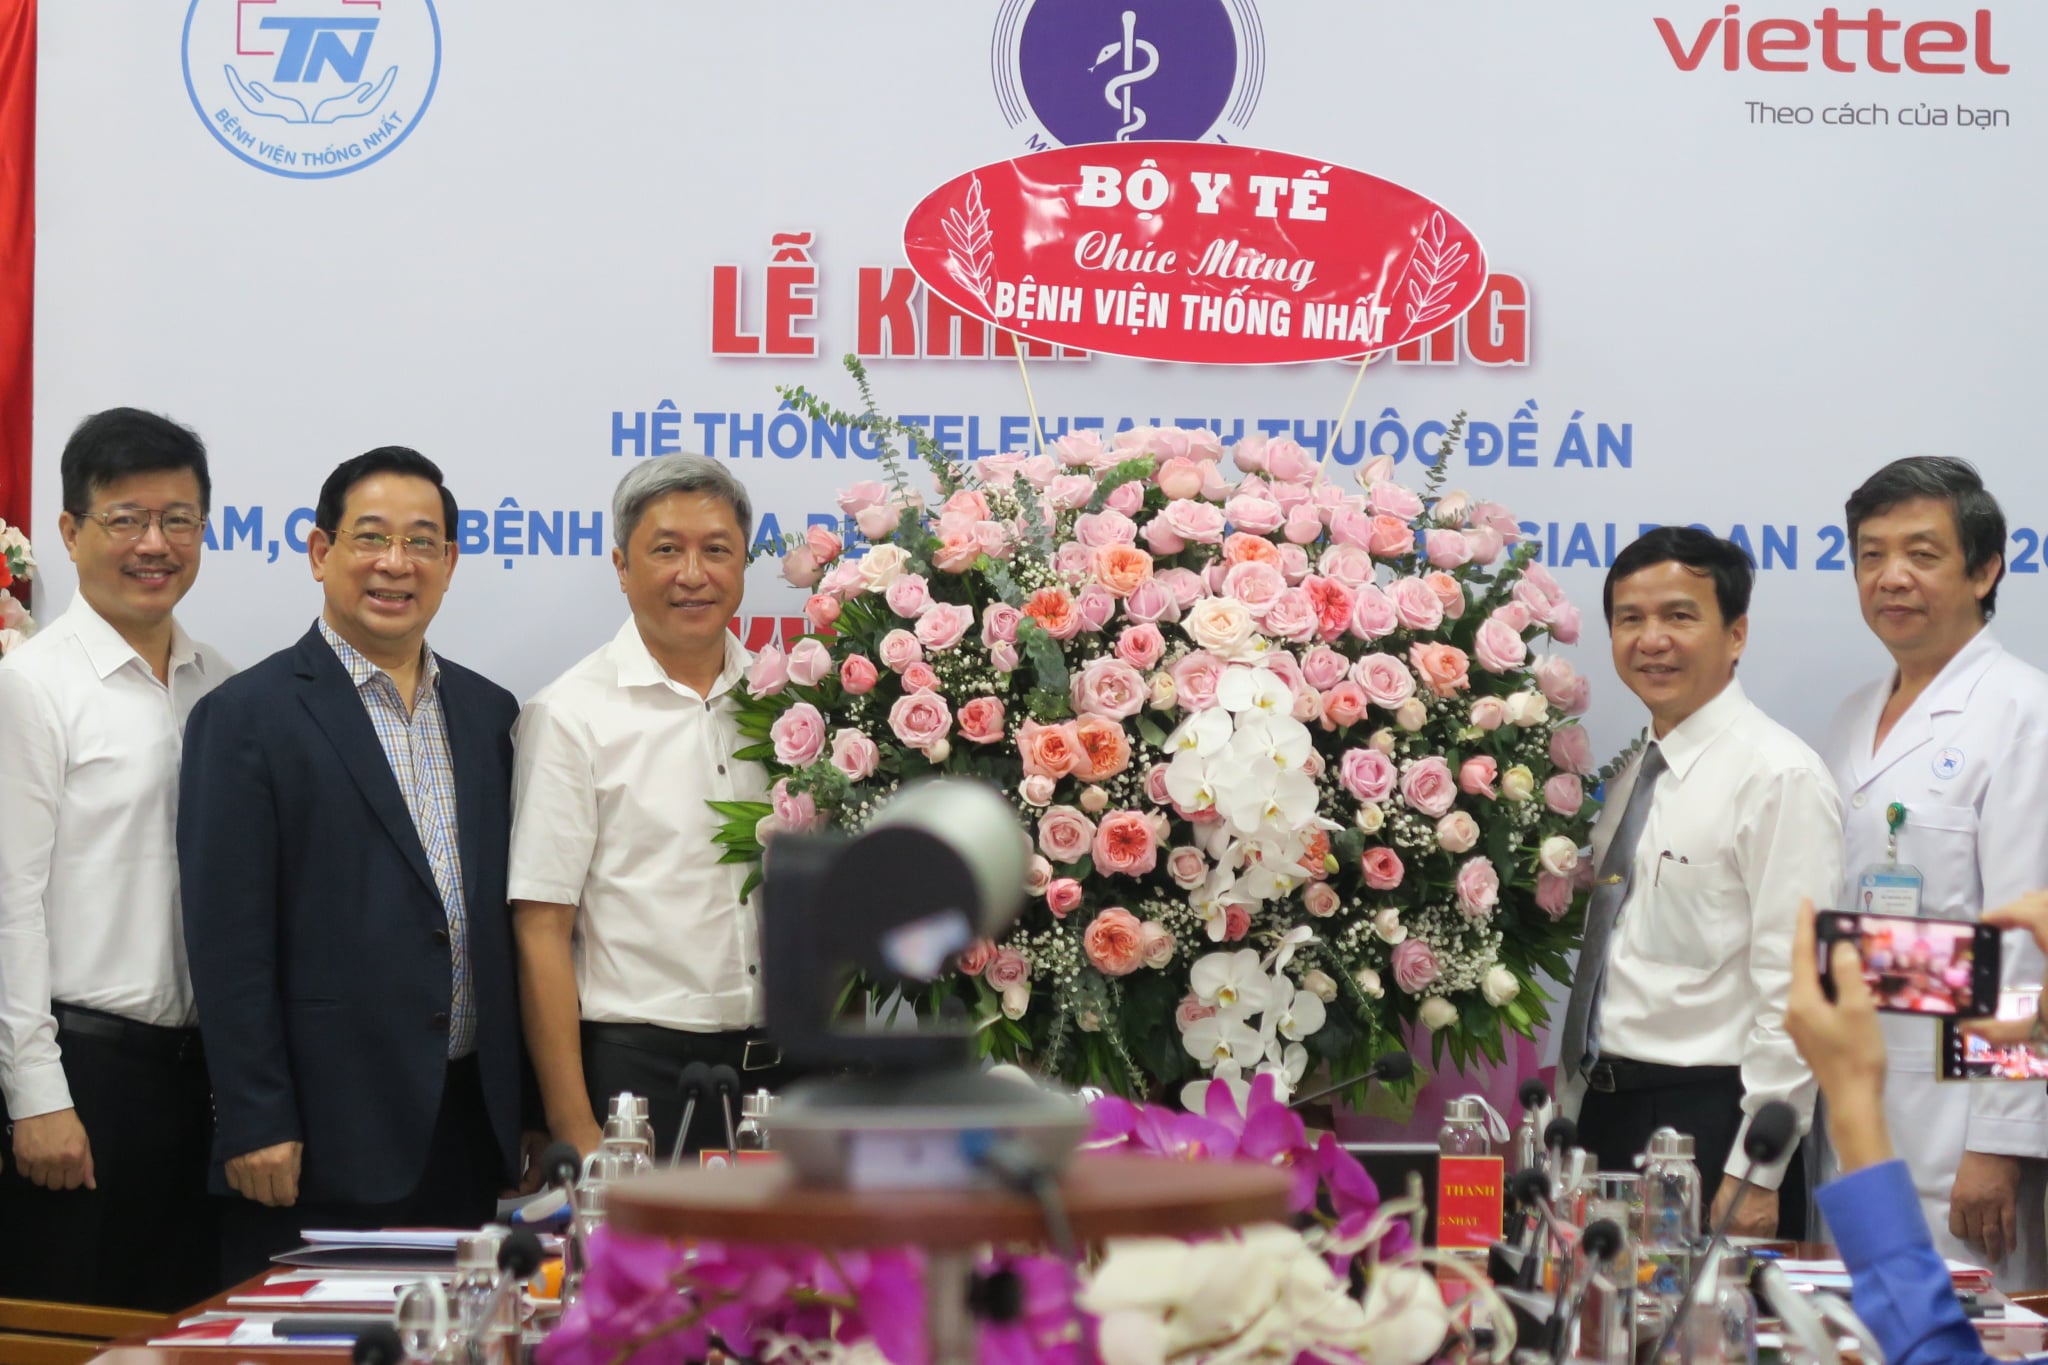 Thứ trưởng Nguyễn Trường Sơn thay mặt Bộ Y tế gửi hoa chúc mừng Bệnh viện Thống Nhất